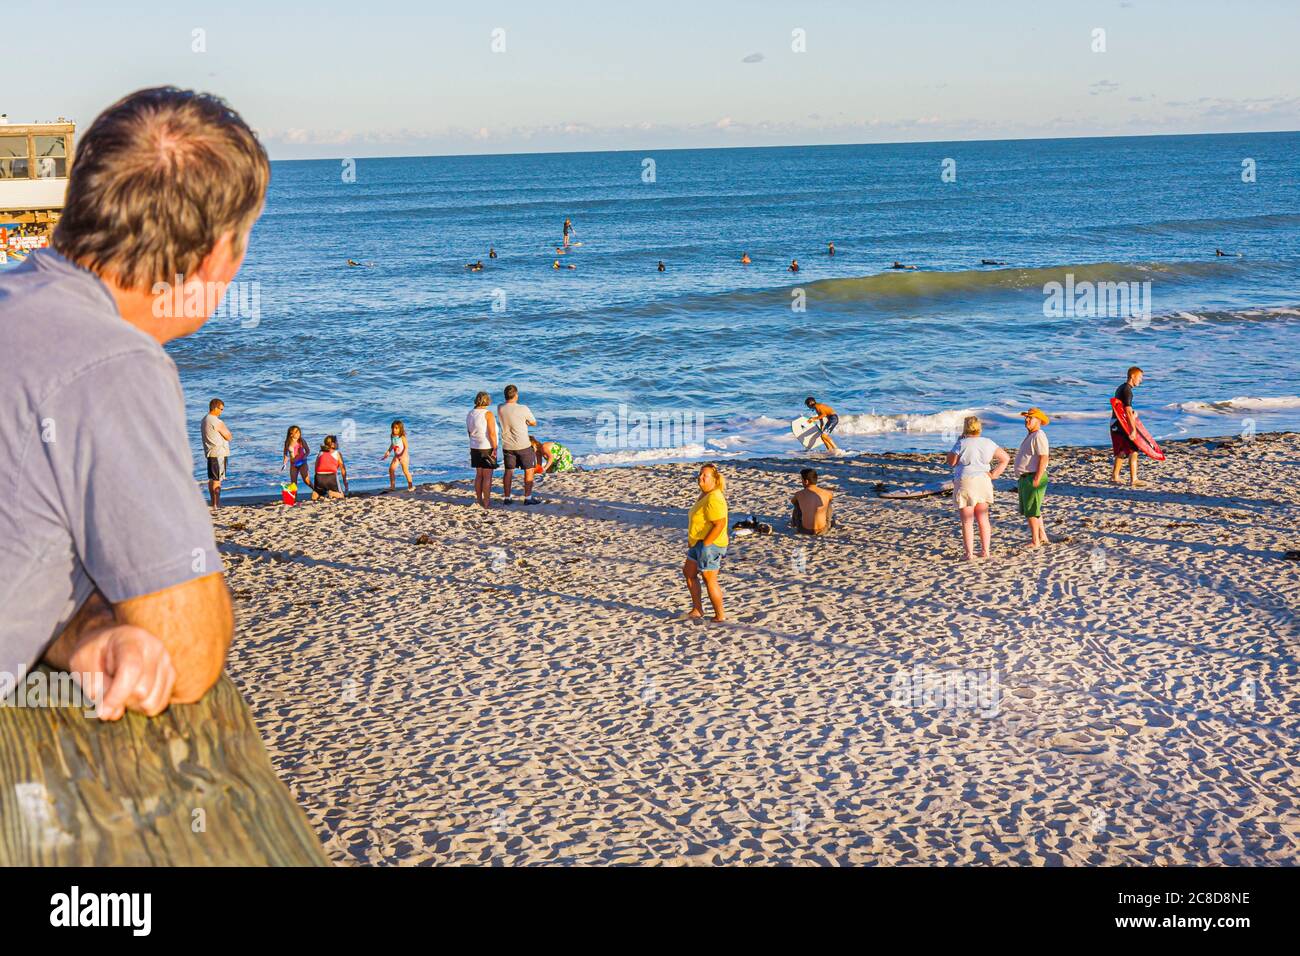 Cocoa Beach Florida, Cocoa Beach Pier, Atlantic Ocean Water man hommes hommes adultes, femme femme femme dame, surfeur, sable, rivage, vagues, eau, observation, bea Banque D'Images